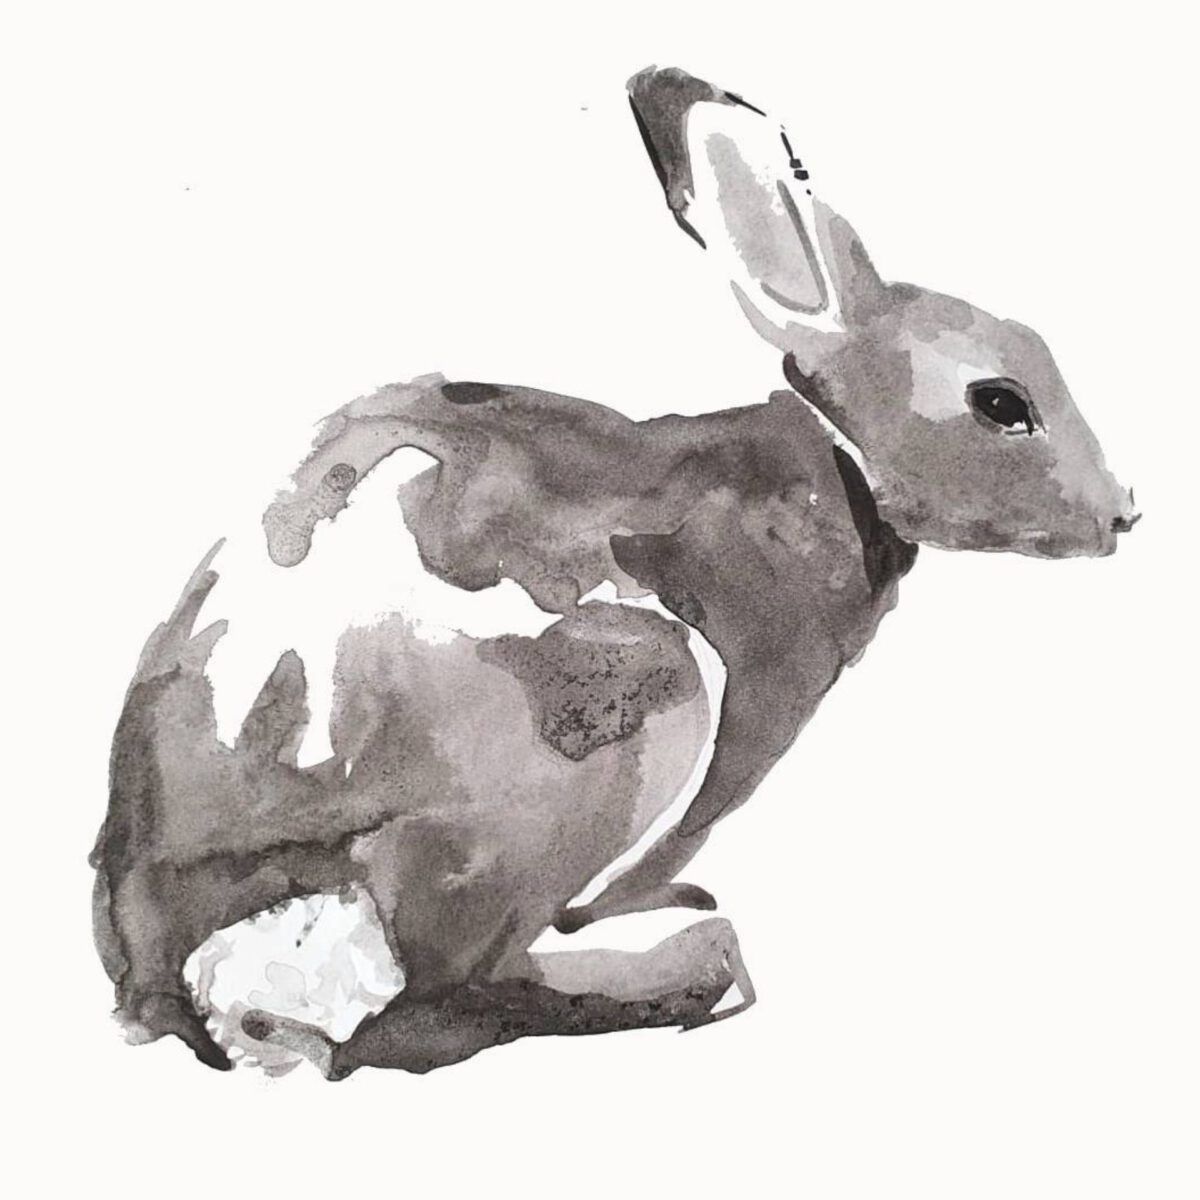 ארנב ציורי בעלי חיים ציורי חיות שחור לבן אמנים יראלים אמנות ציור ציורים ציור מקורי אנה רדיס anna radis